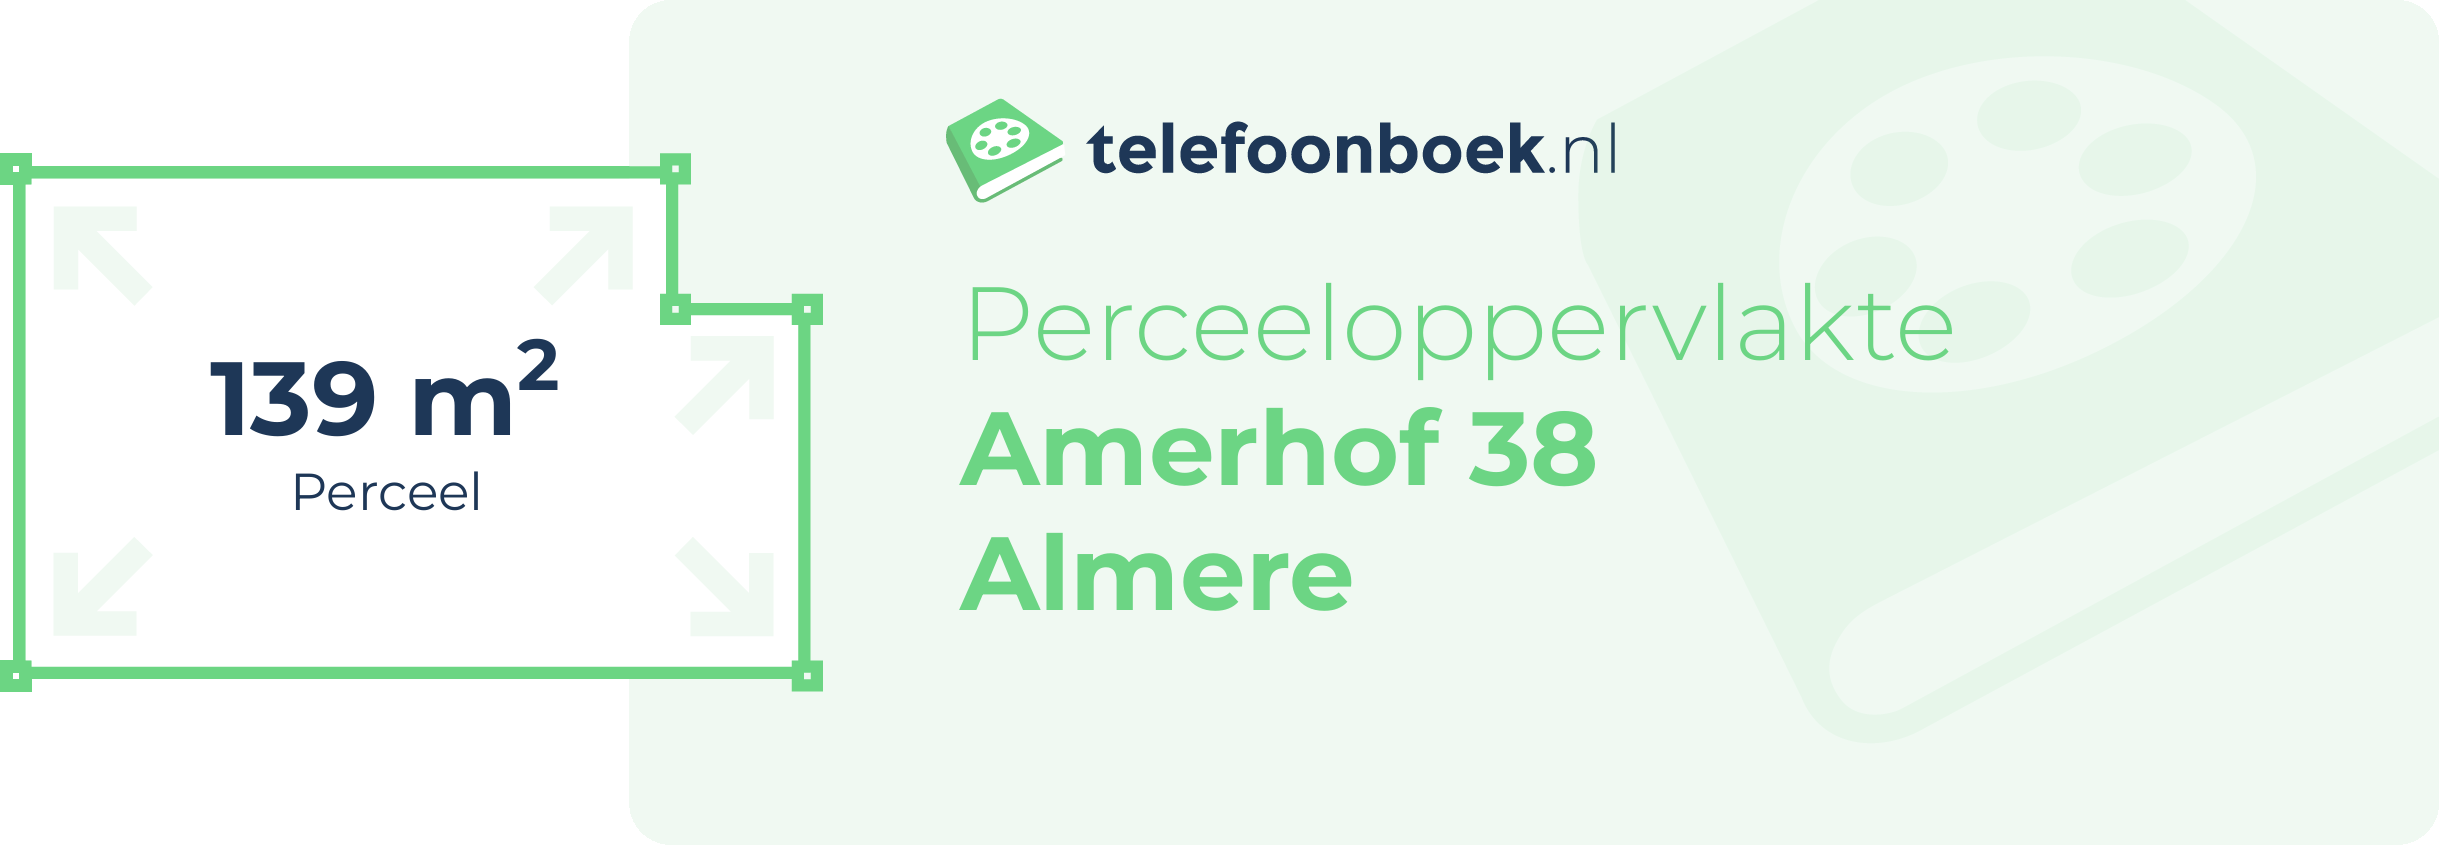 Perceeloppervlakte Amerhof 38 Almere